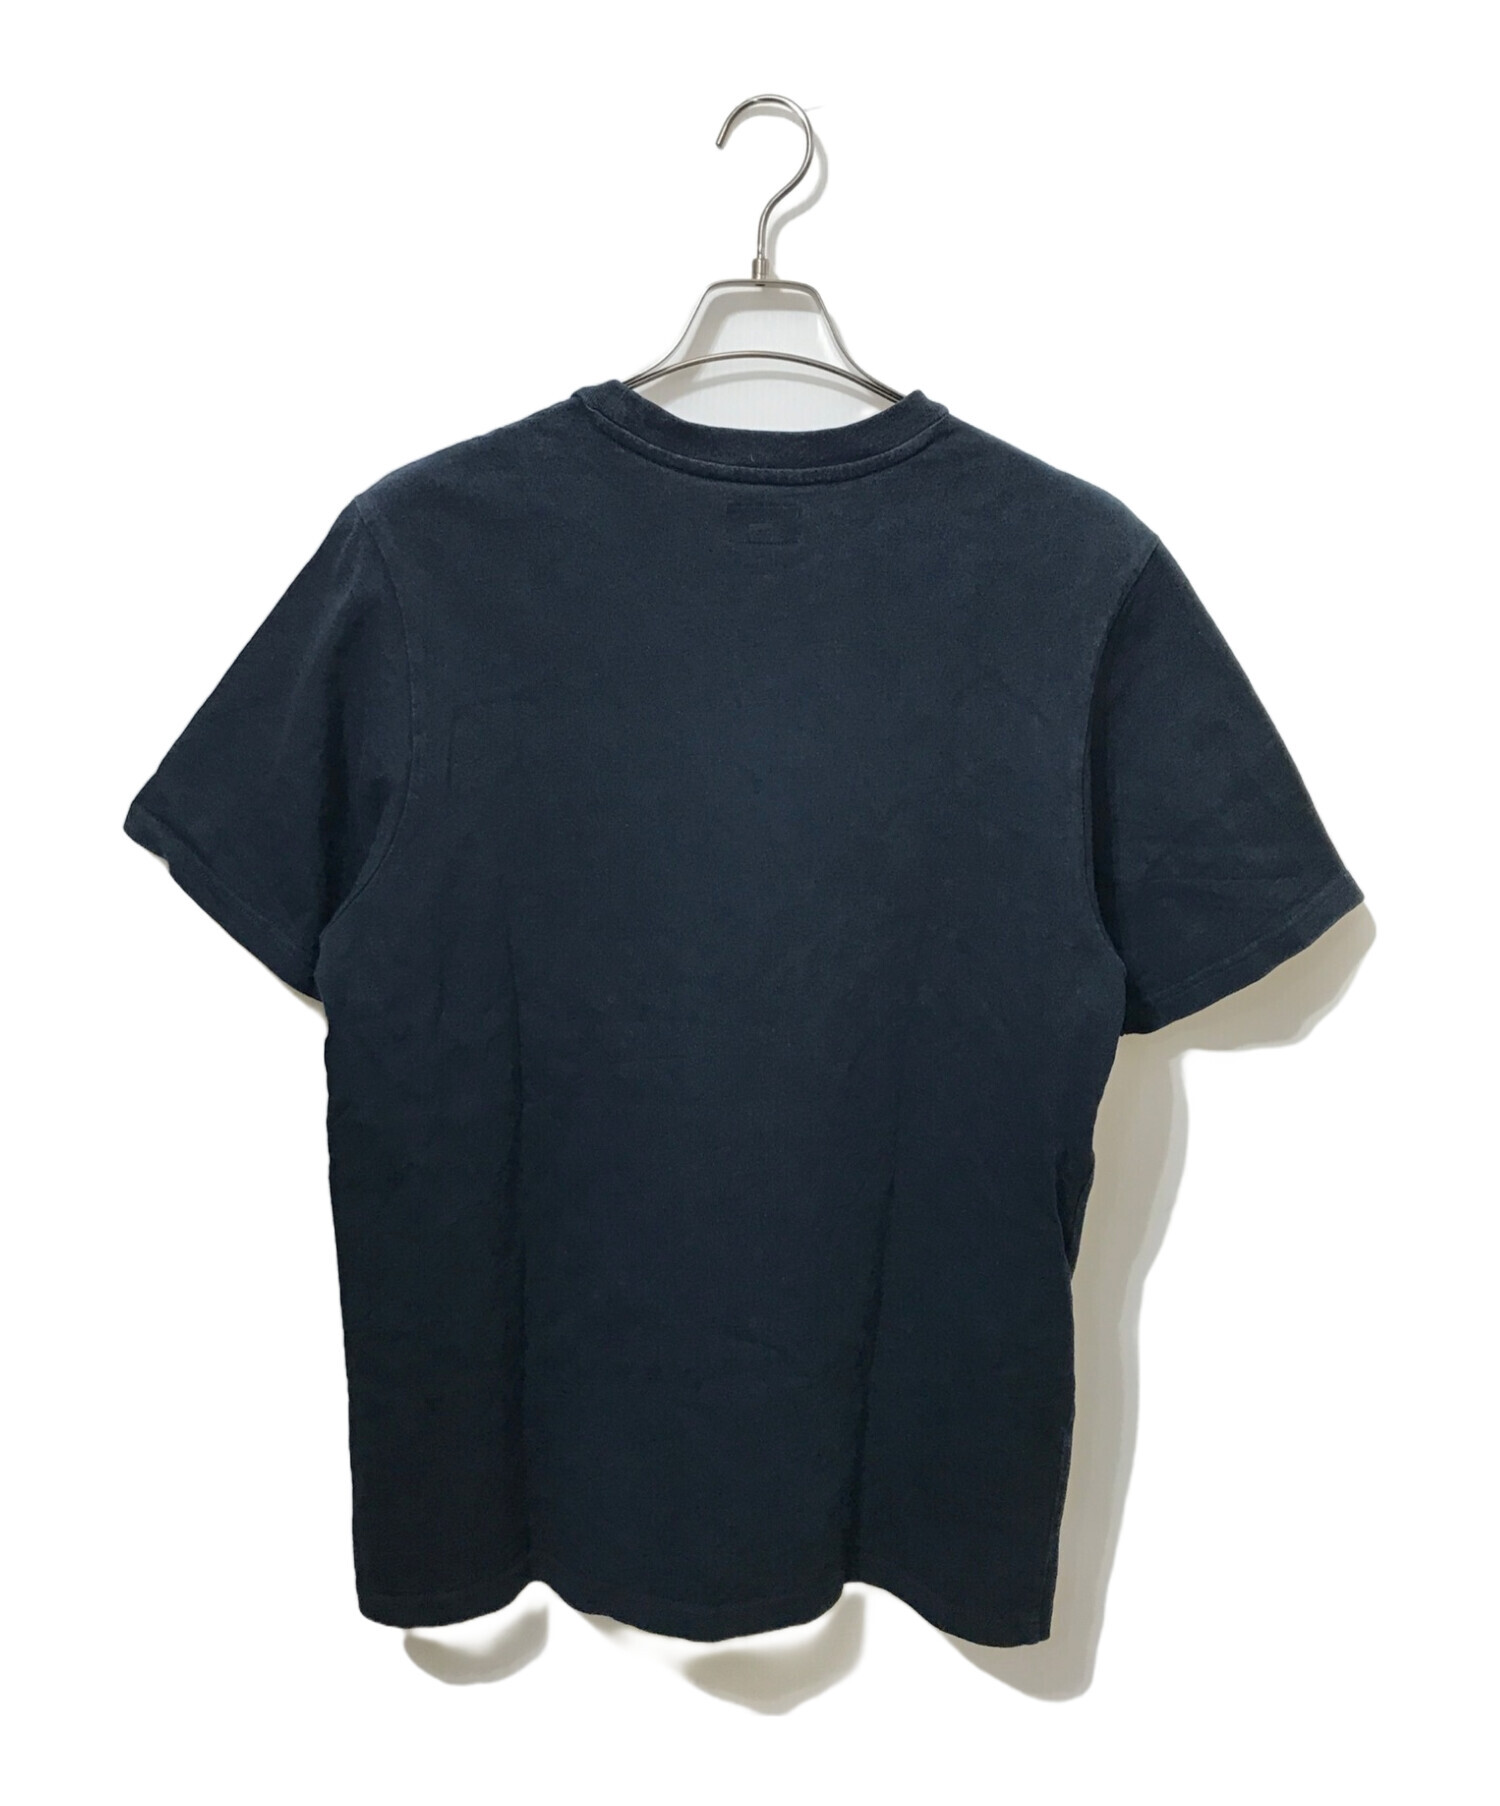 SUPREME (シュプリーム) ワンポイントロゴポケットTシャツ ブラック サイズ:M